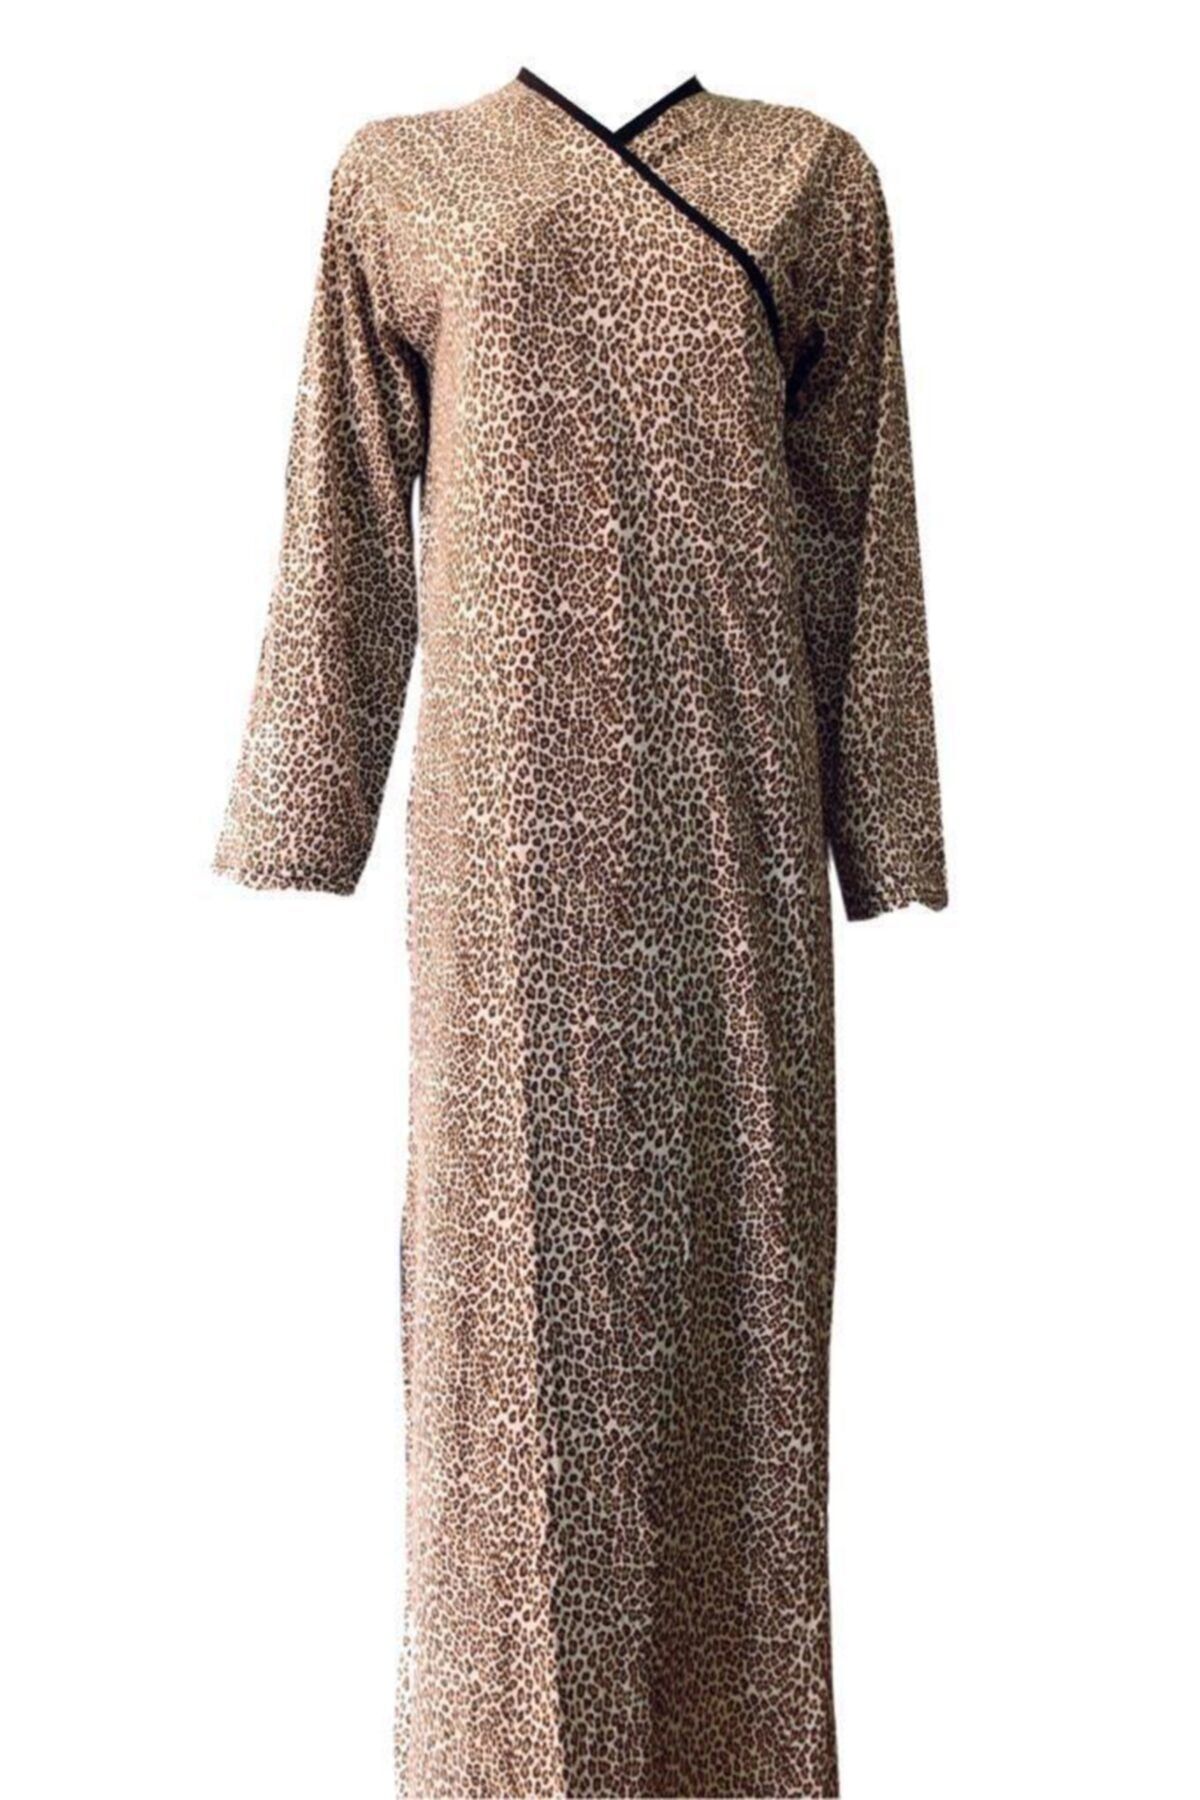 Hazal Namaz Elbisesi Leopar Desen Bağlamalı Model